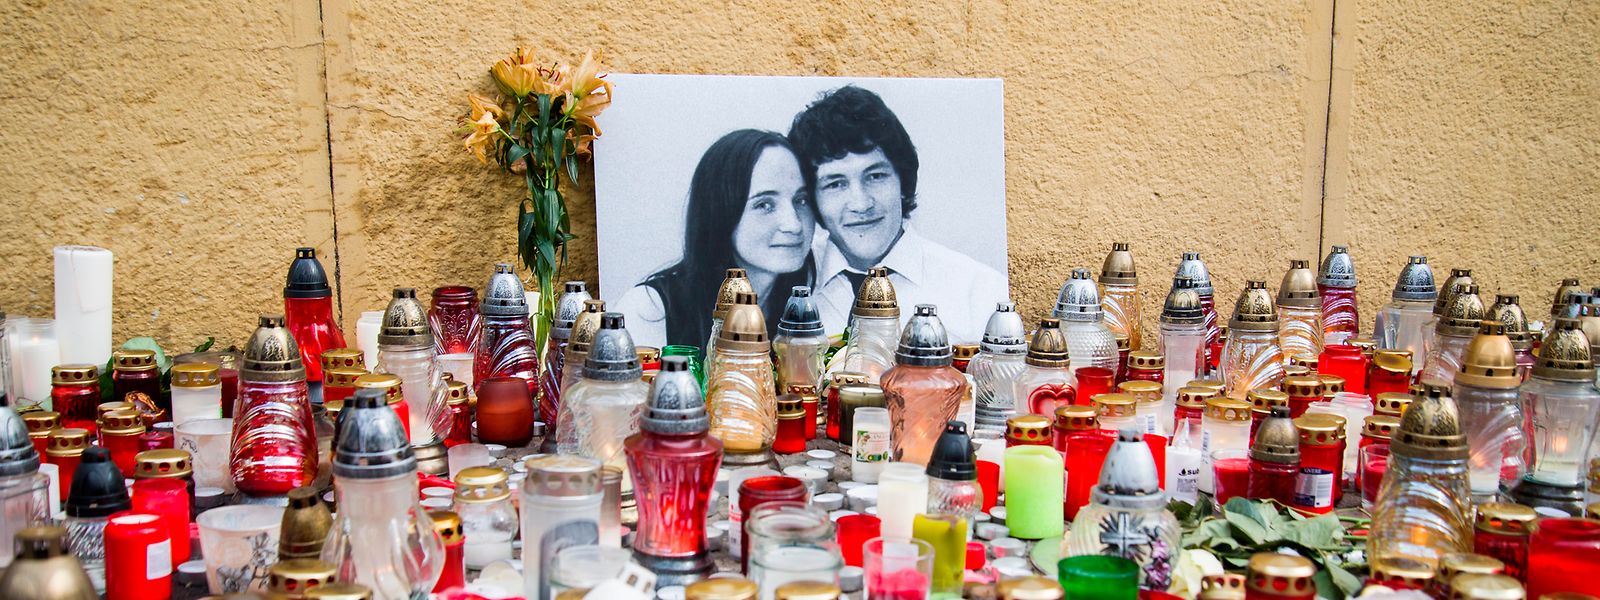 Kerzen sind neben einem Bild des Investigativ-Journalisten Kuciak und seiner Verlobten Martina aufgestellt. Das Paar wurde in seinem Haus in Velka Maca erschossen. Der mutmaßliche Auftraggeber des Journalistenmordes hat offenbar systematisch Richter bestochen, die über seine zahlreichen Betrugsfälle zu entscheiden hatten.